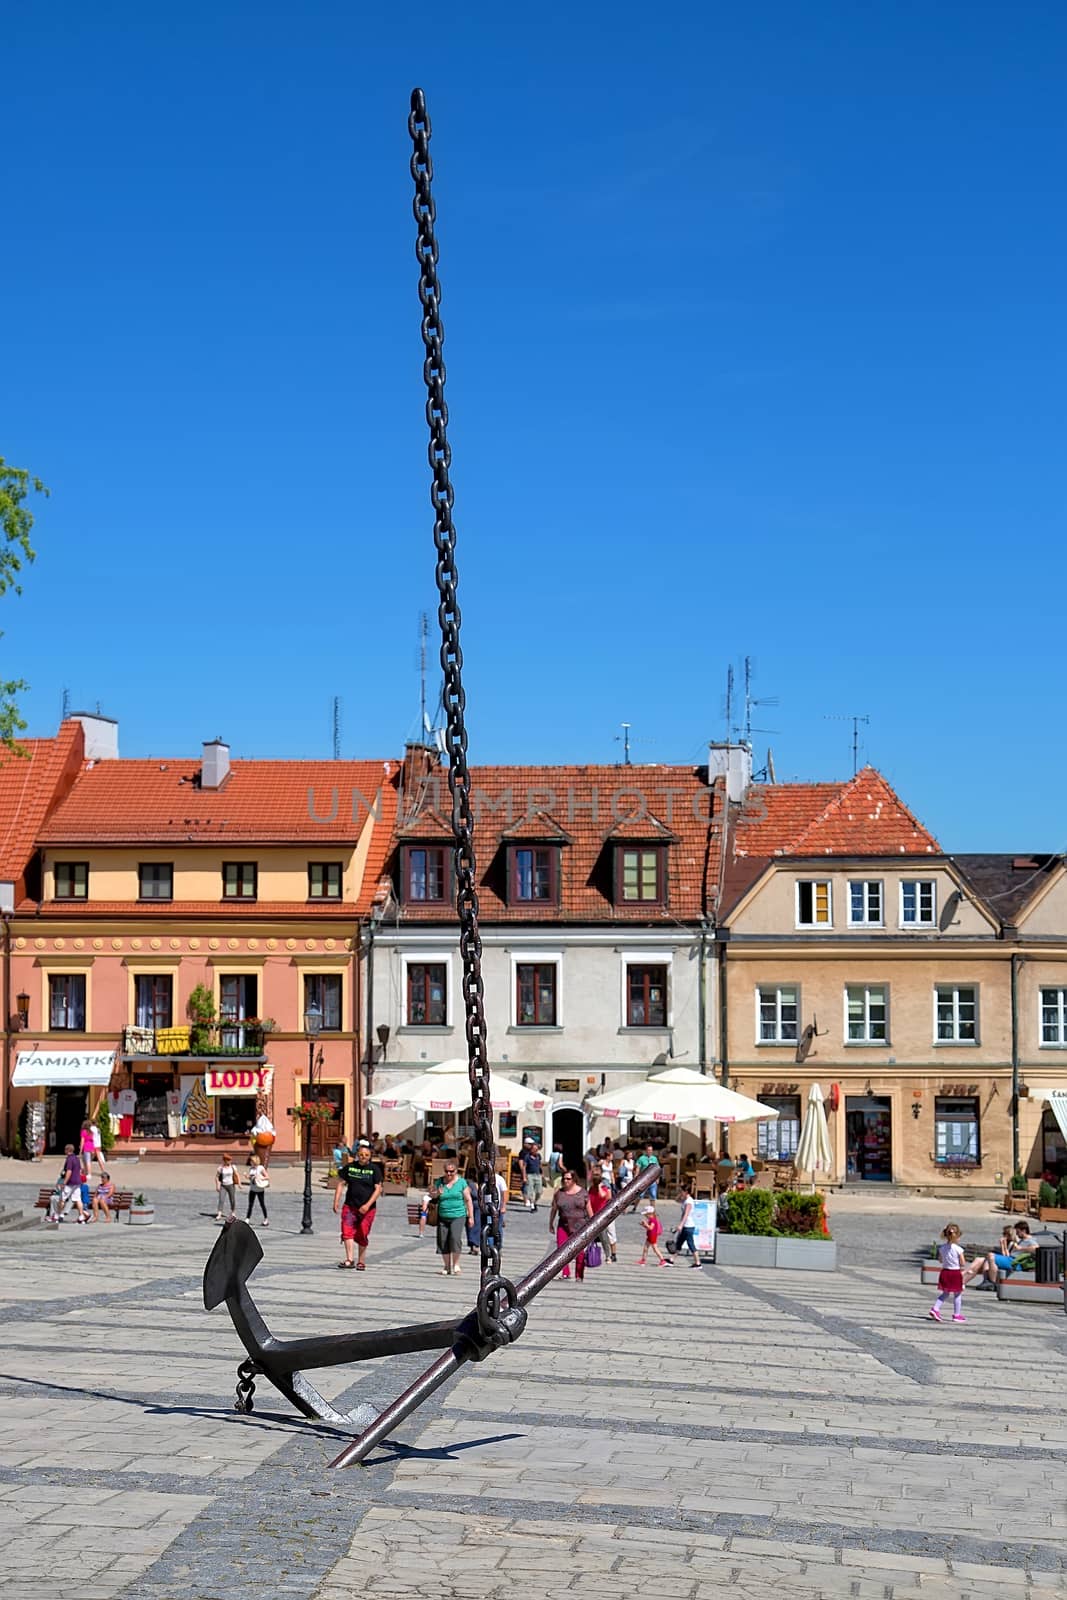 SANDOMIERZ - JUNE 05: Sculpture Anchor heaven in the Old Town of Sandomierz on June 05, 2015 in Sandomierz, Poland